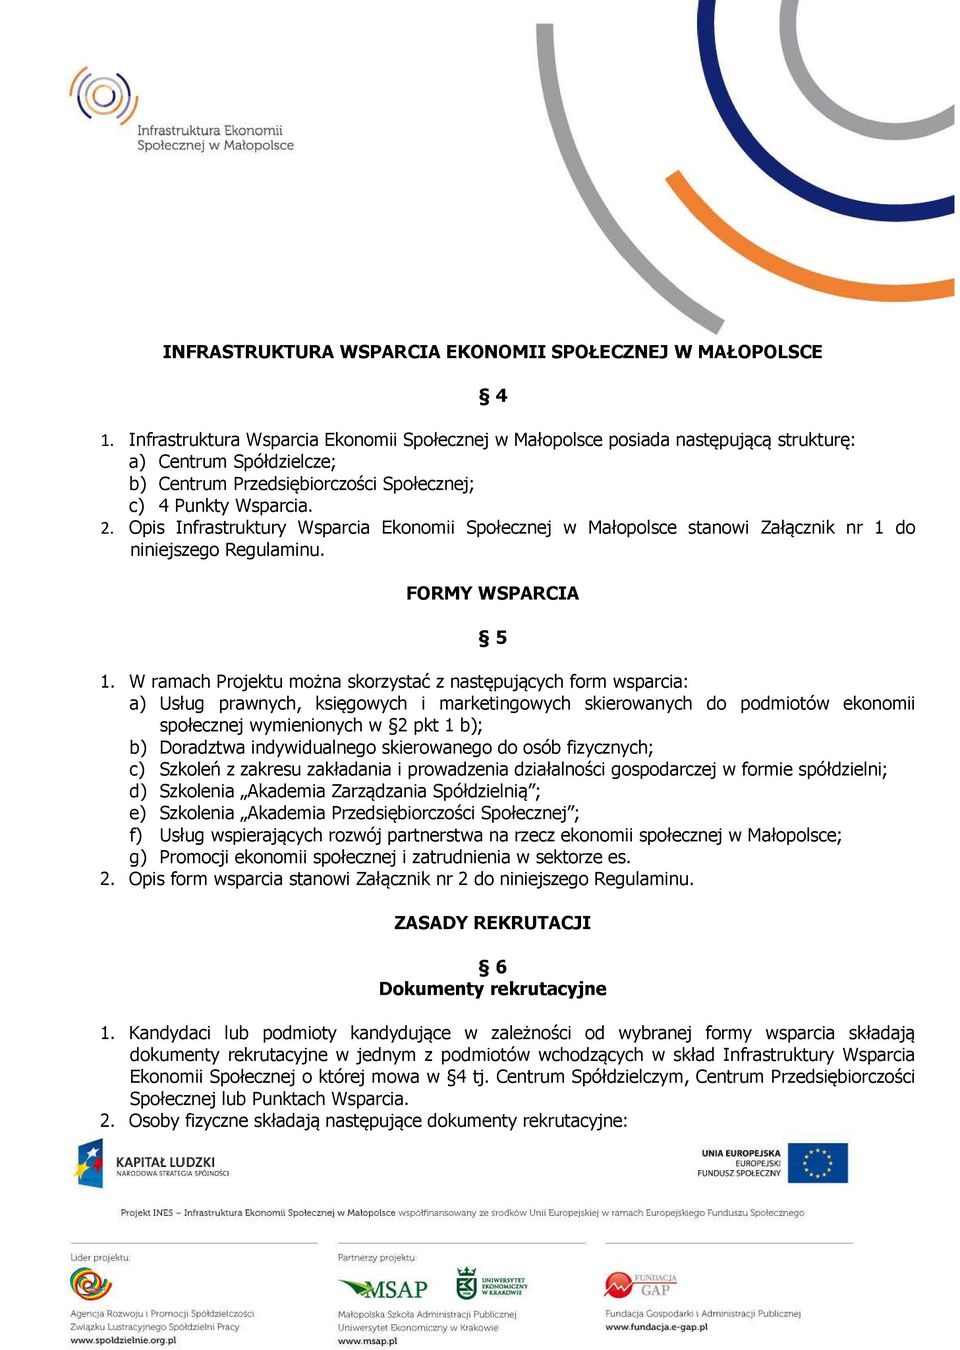 Opis Infrastruktury Wsparcia Ekonomii Społecznej w Małopolsce stanowi Załącznik nr 1 do niniejszego Regulaminu. FORMY WSPARCIA 5 1.